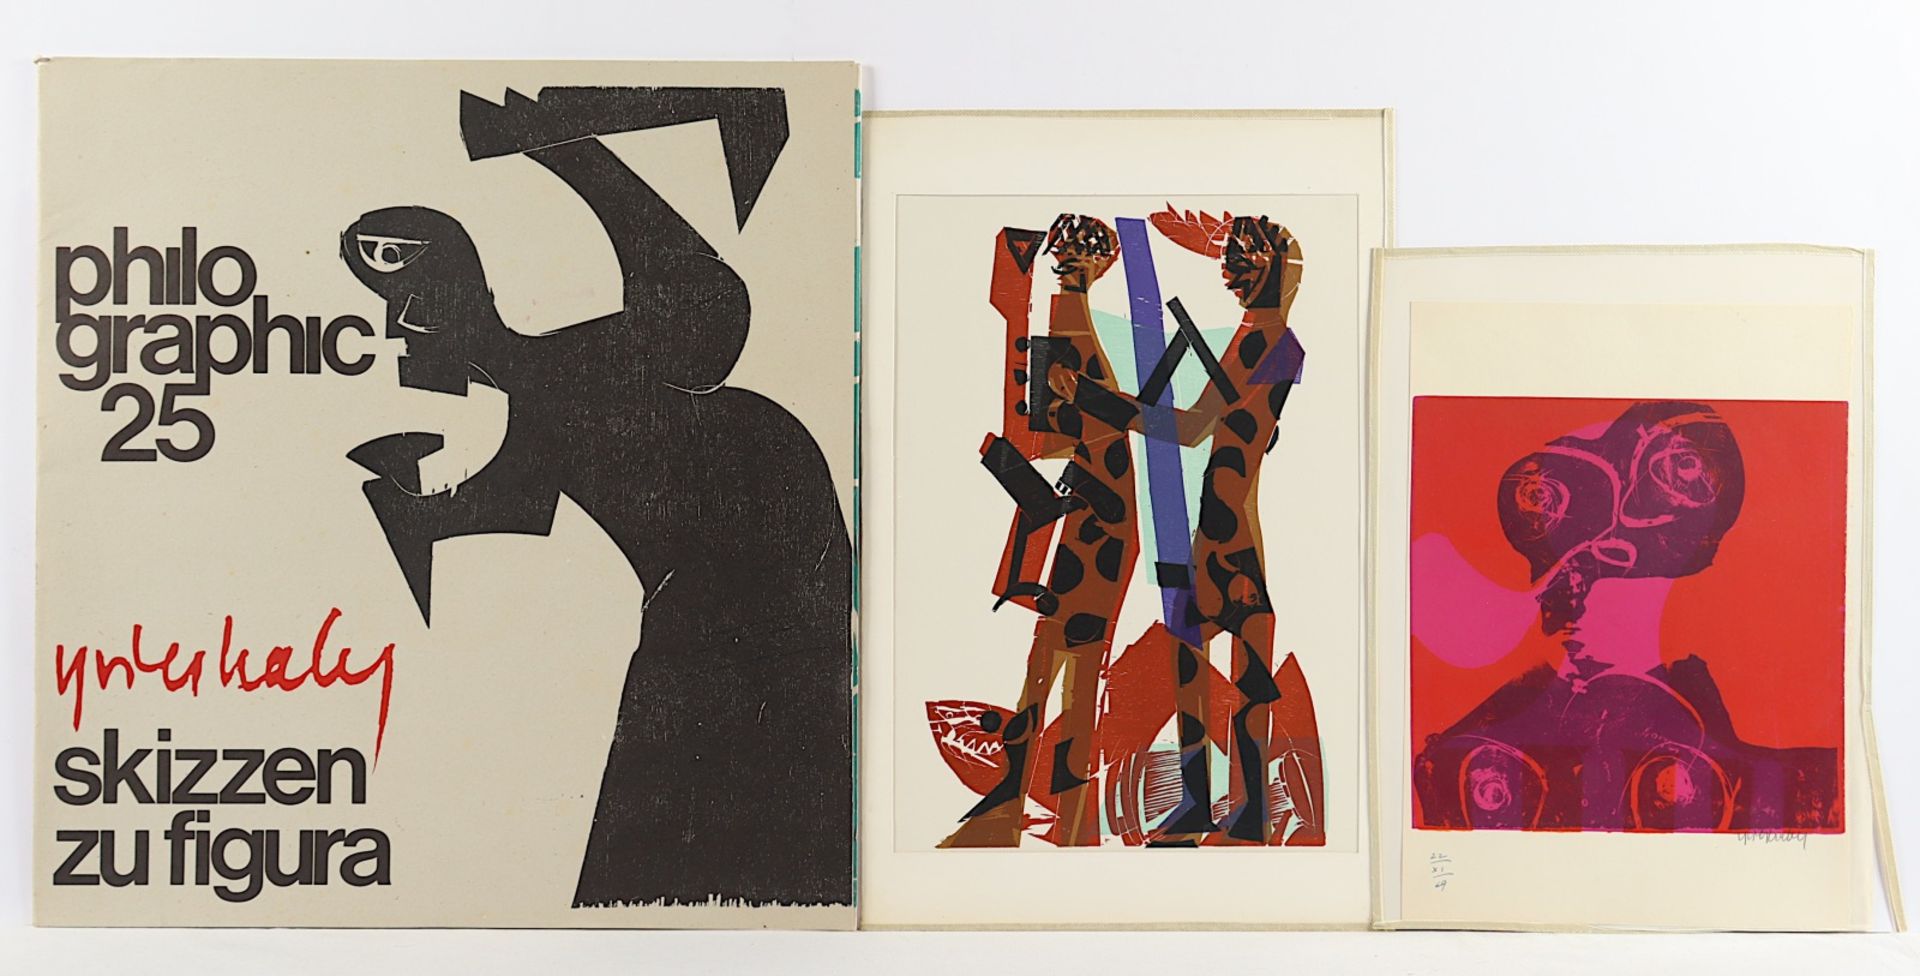 GRIESHABER, Hap, Mappe "Skizzen zu figura", 1970, 53 x 50, und zwei ungerahmte Farbholzschnitte, ei